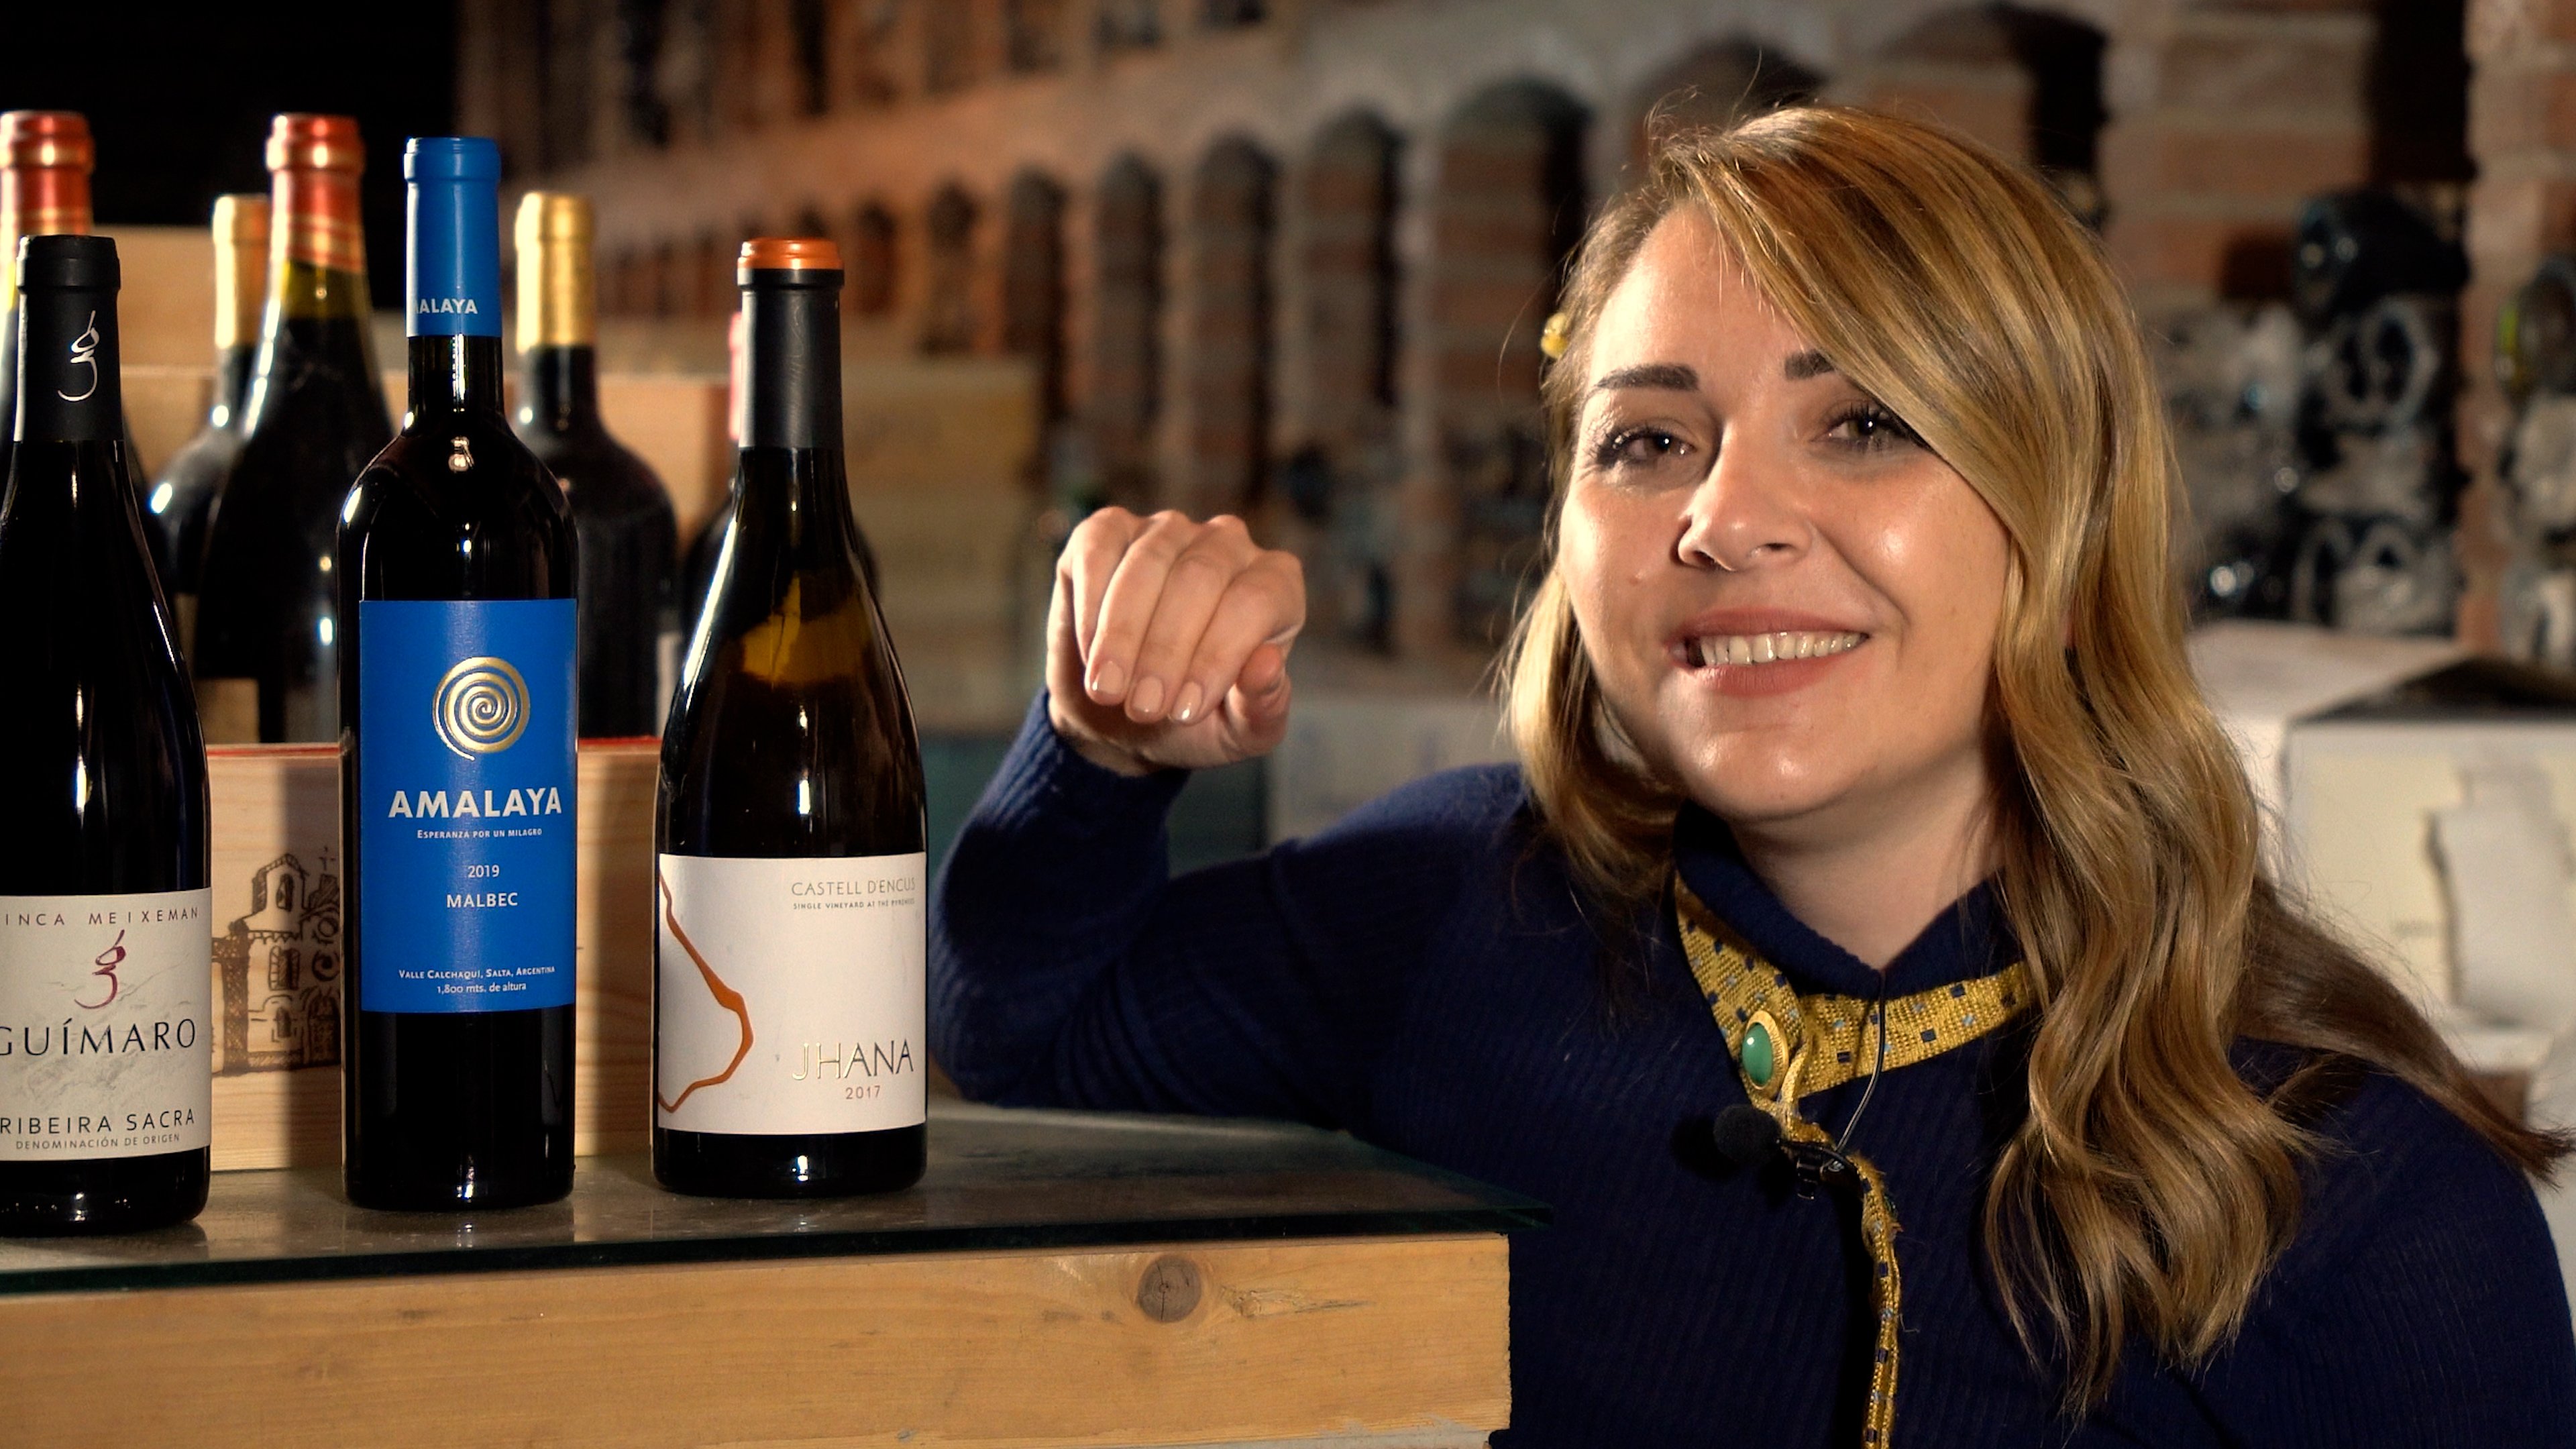 ¿Qué es la viticultura heroica? Tres vinos de montaña para descubrirla